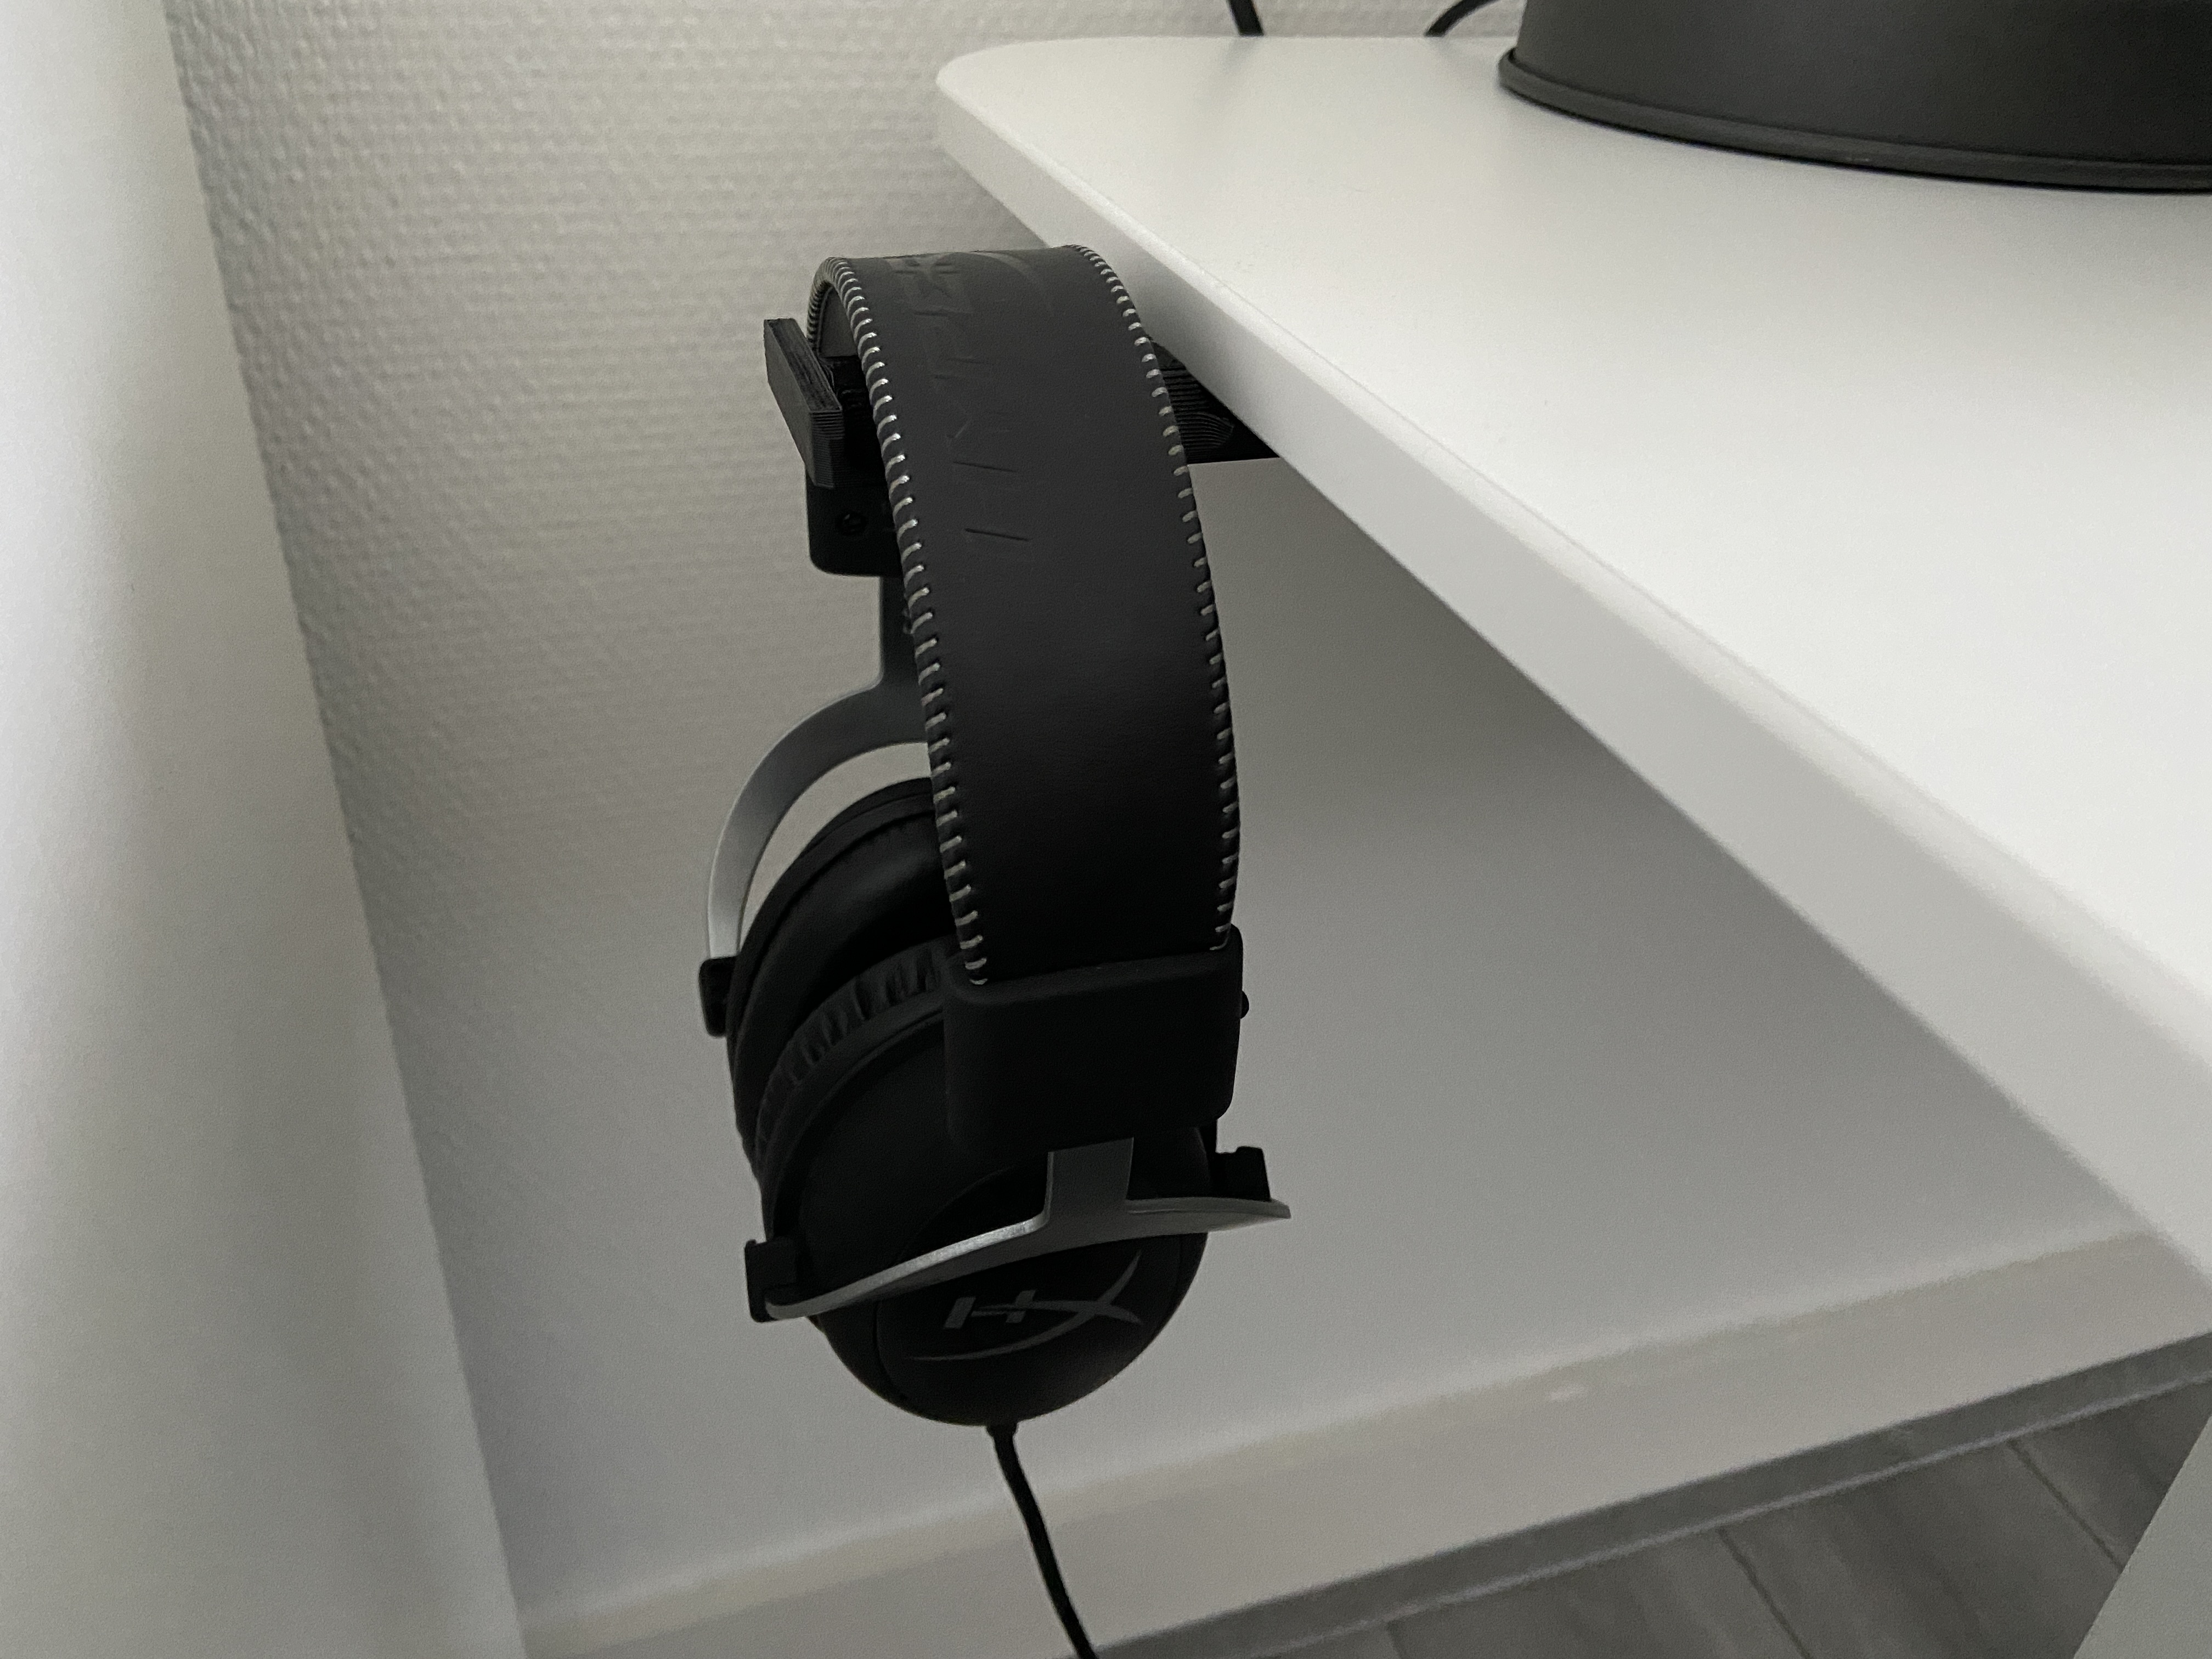 Headphone holder beside desk top.